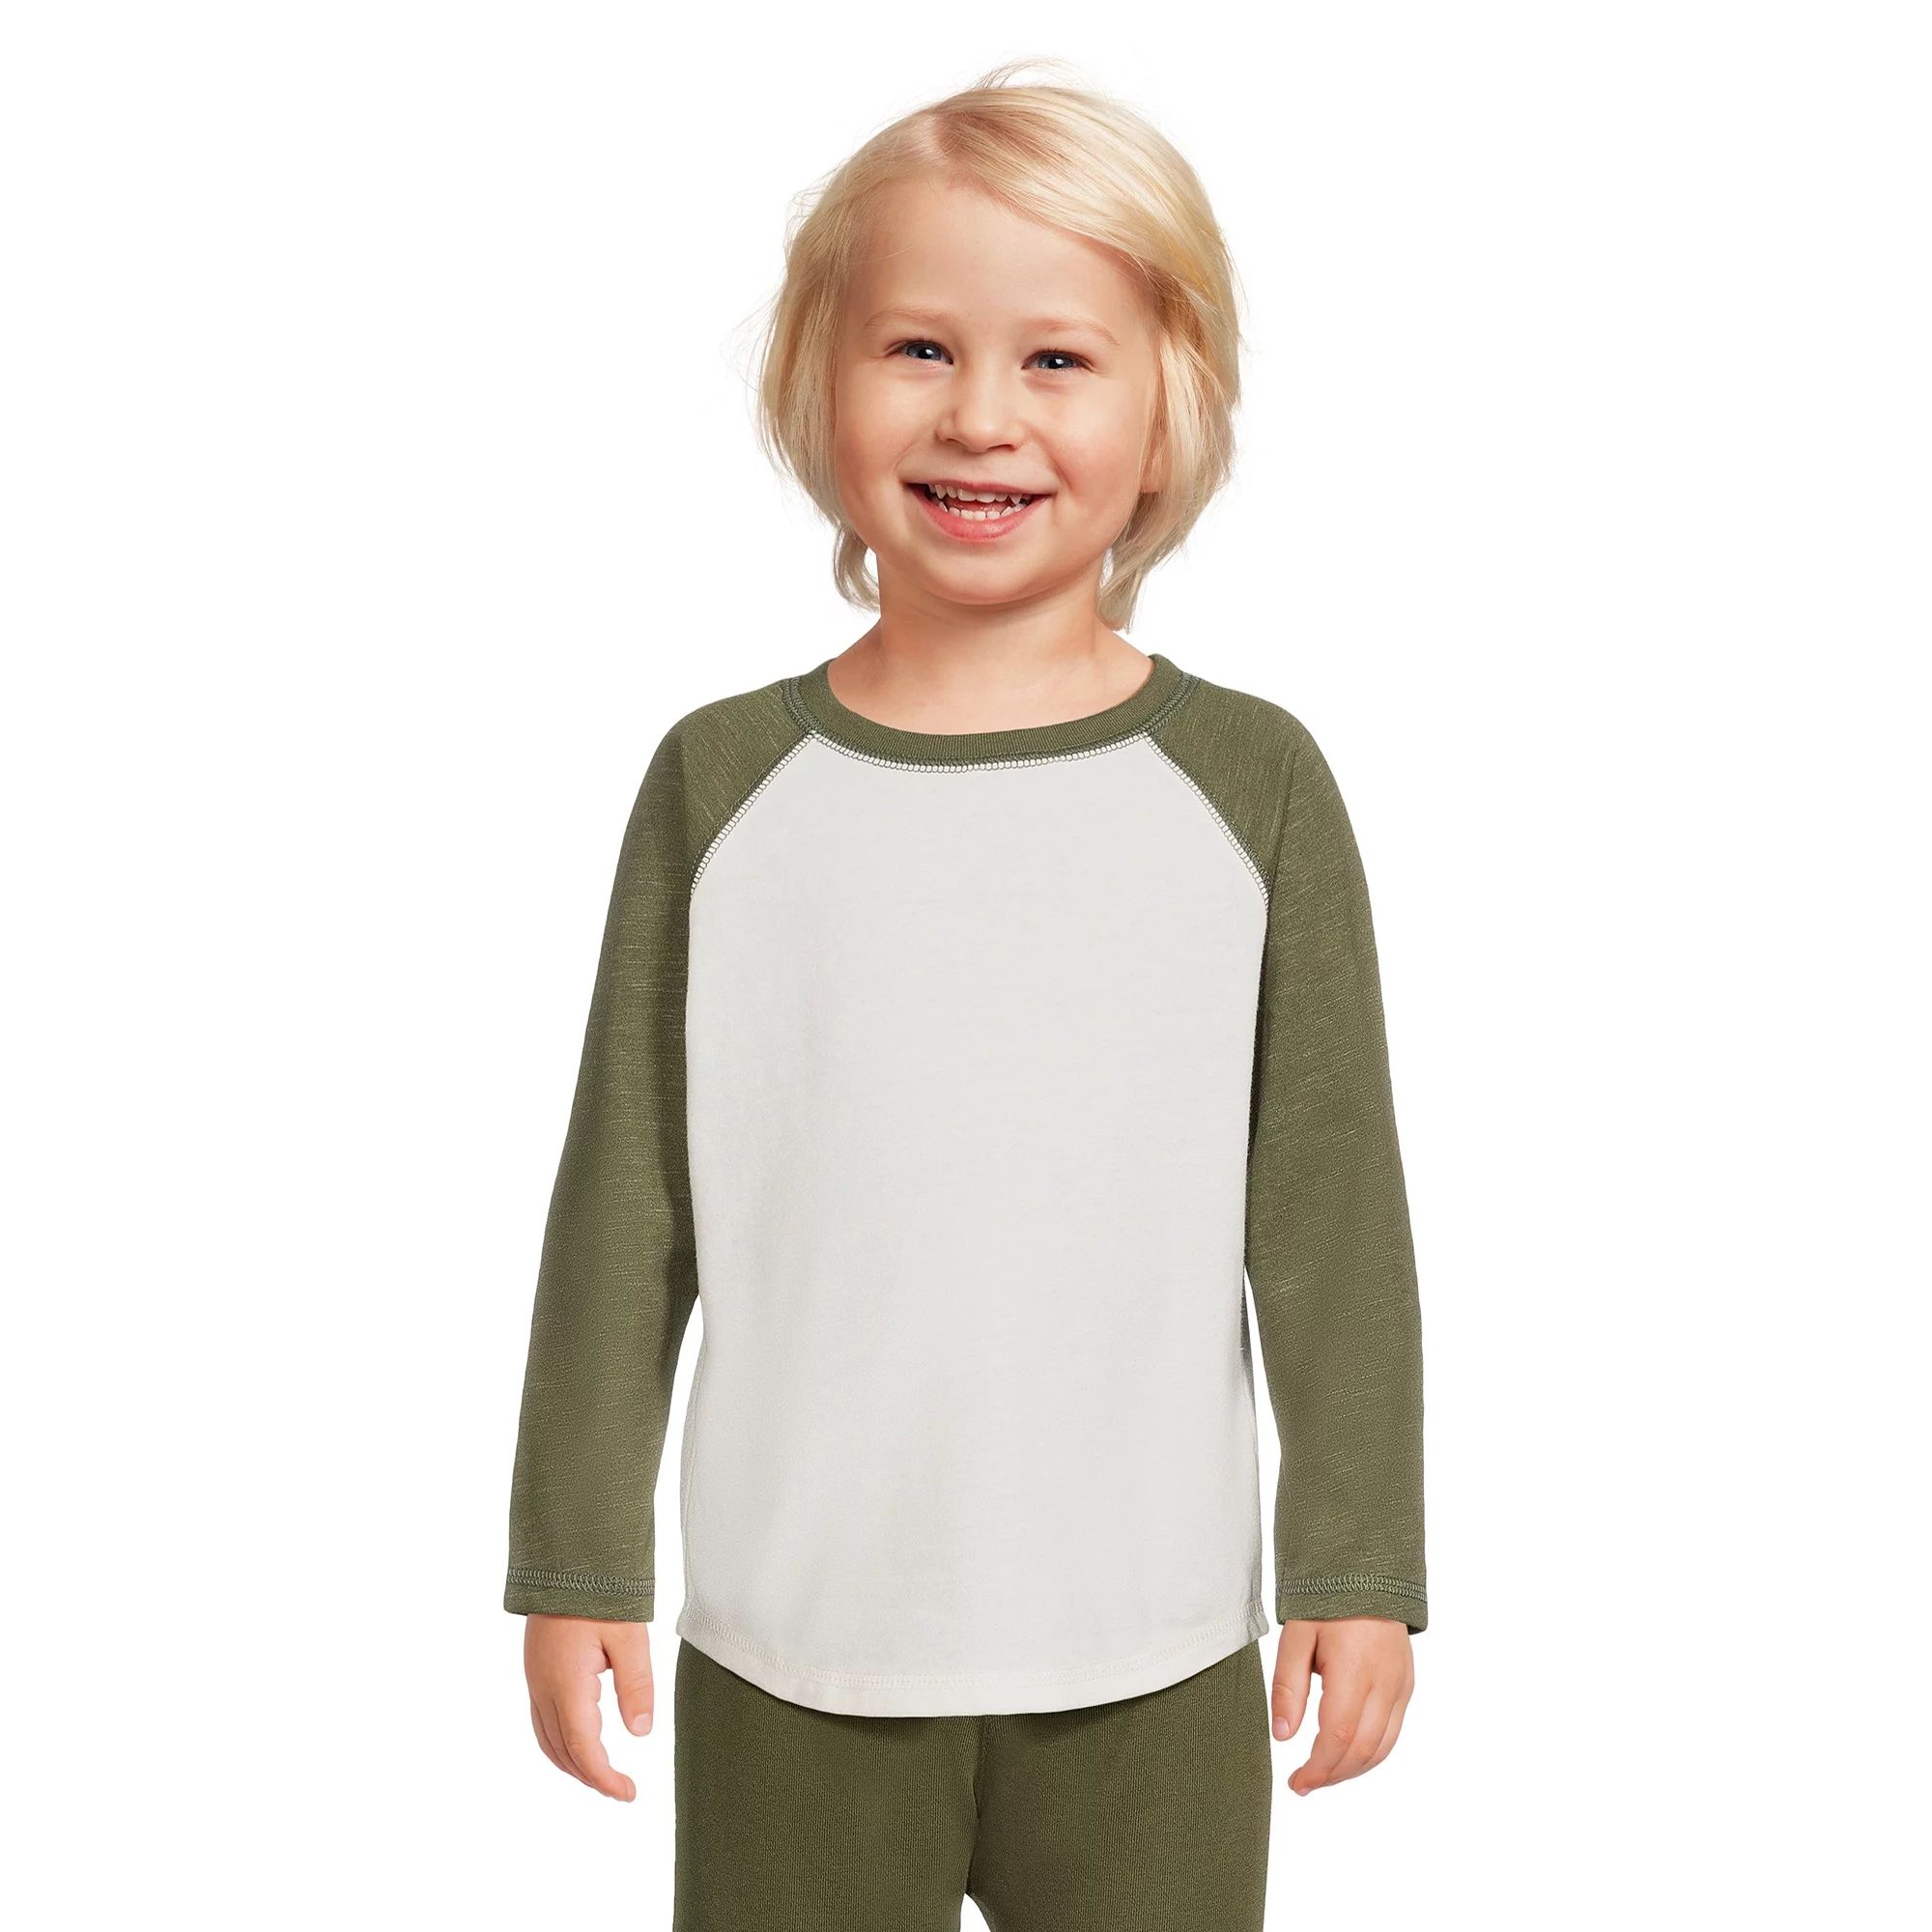 Garanimals Toddler Boy Long Sleeve Raglan T-Shirt, Sizes 12M-5T | Walmart (US)